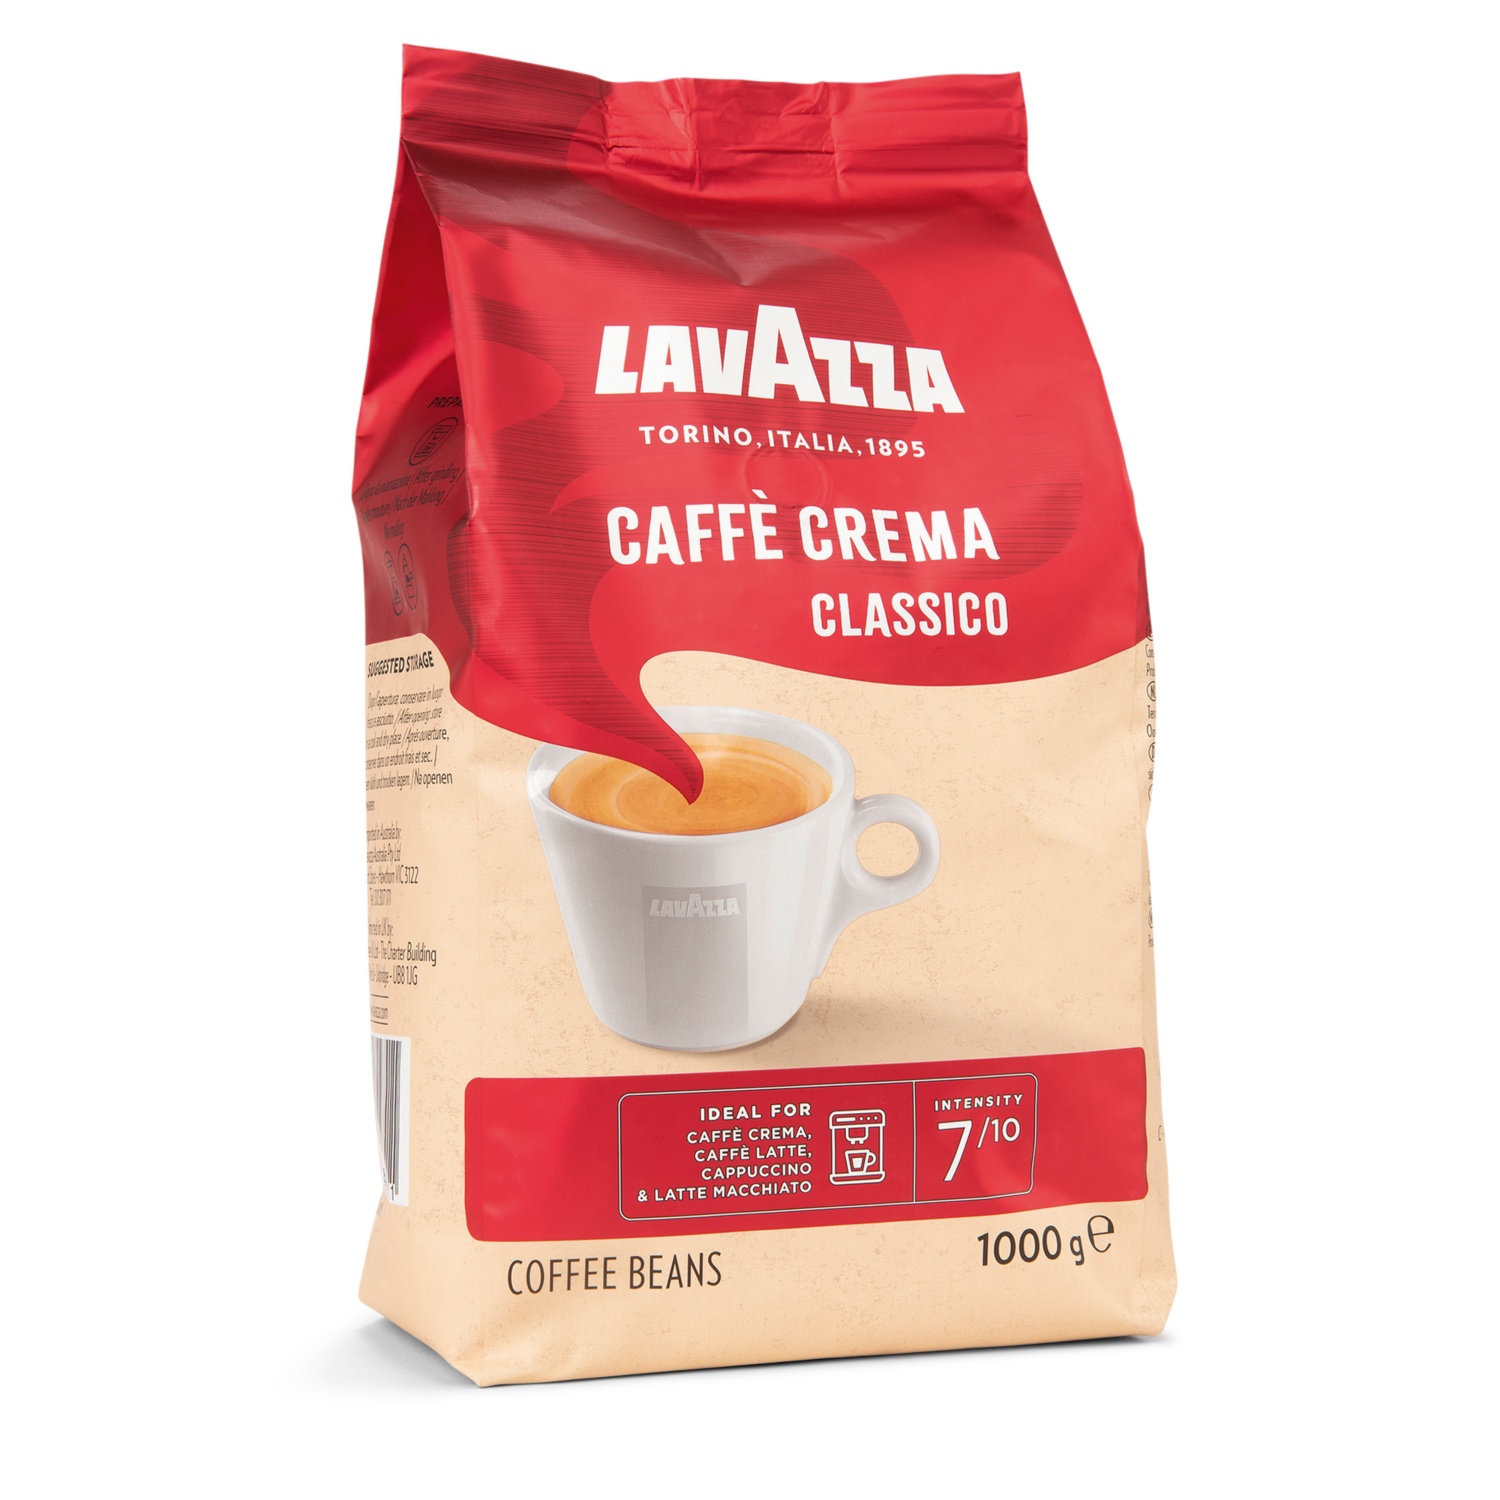 LAVAZZA Caffè Crema, Classico